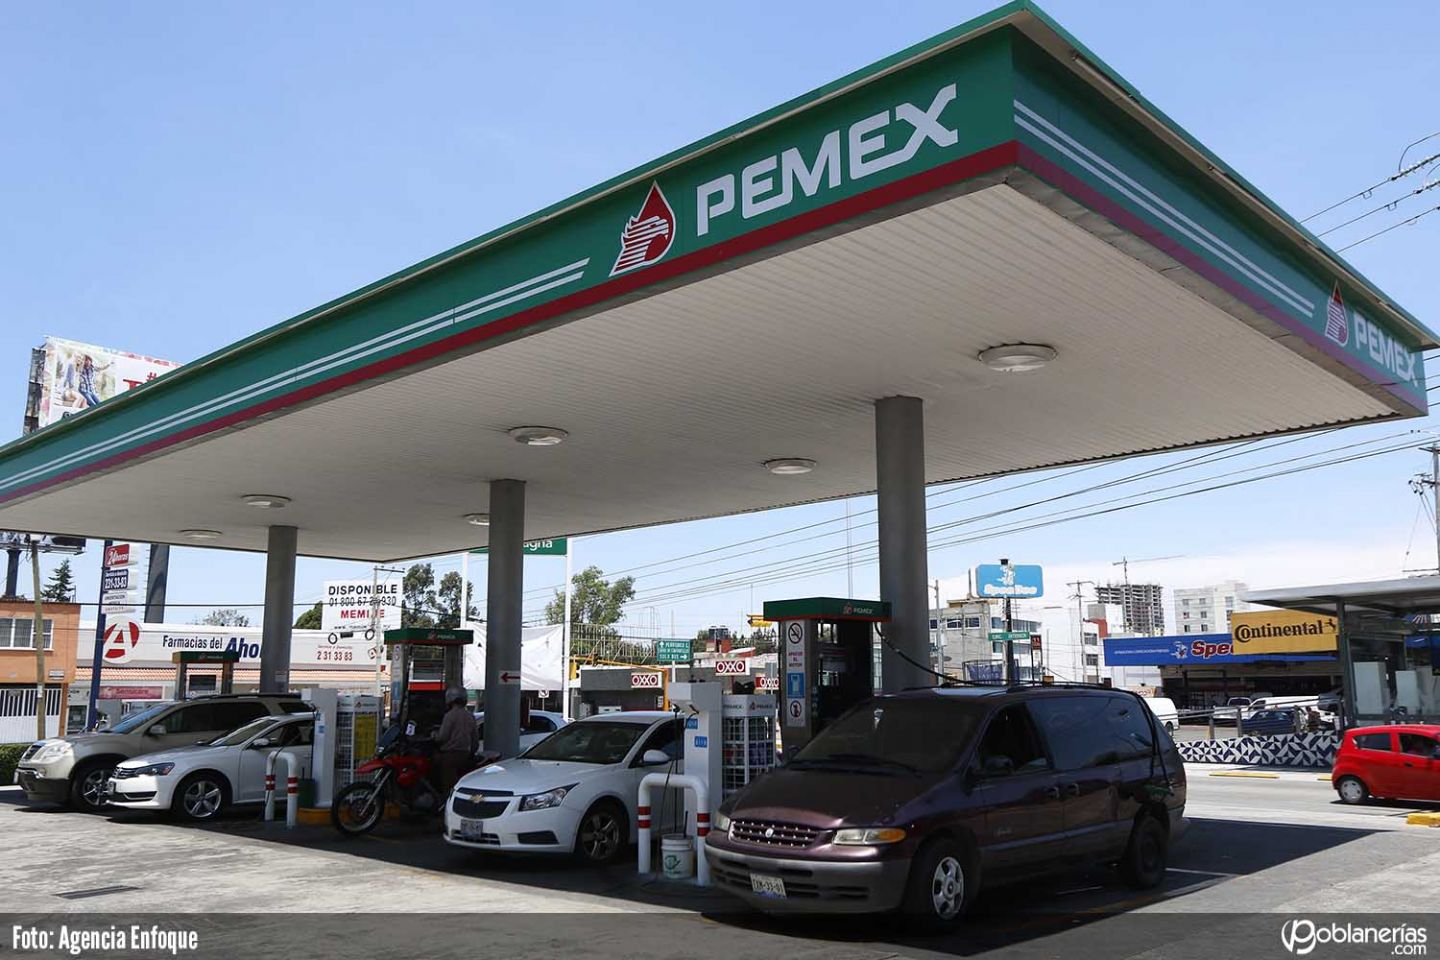 Tras tragedia de Tlahuelilpan se restableció abasto de gasolina; Coparmex, hizo una propuesta ridícula